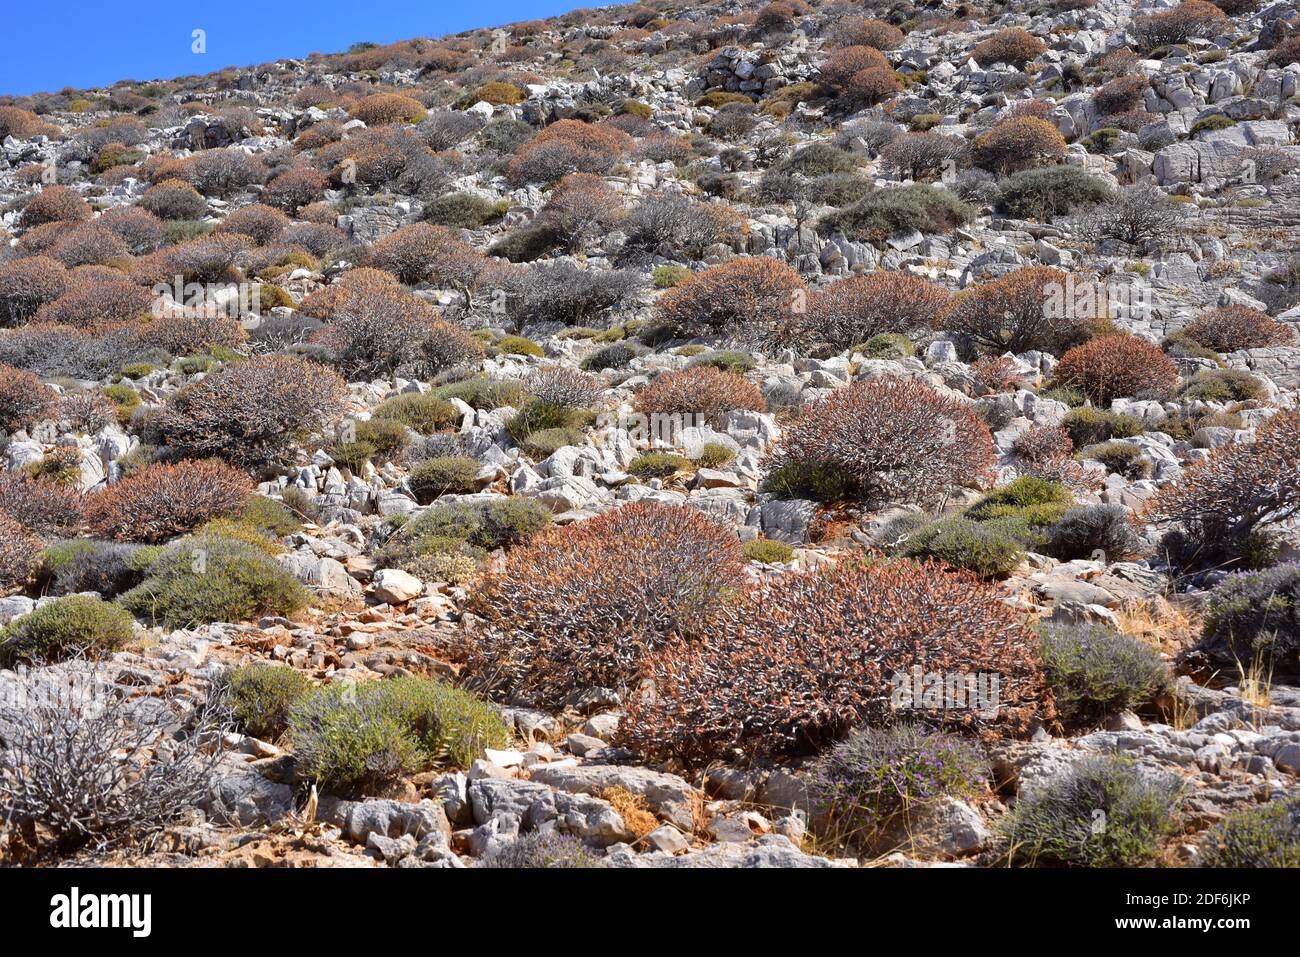 Tree spurge (Euphorbia dendroides) is a shrub native to Mediterranean coastline. This photo was taken in Folegandros Island, Greece. Stock Photo